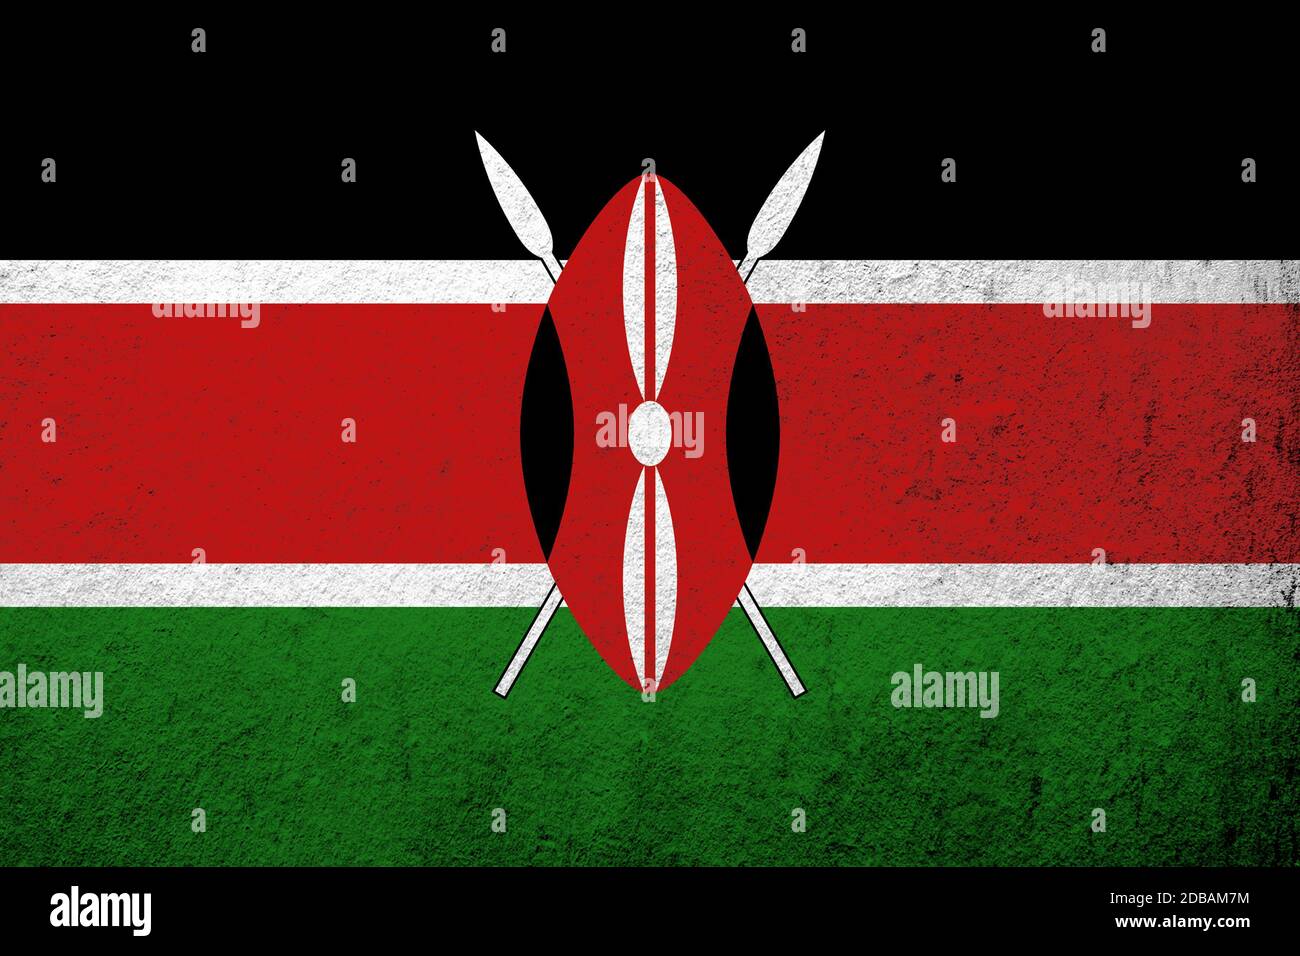 The Republic of Kenya National flag. Grunge background Stock Photo